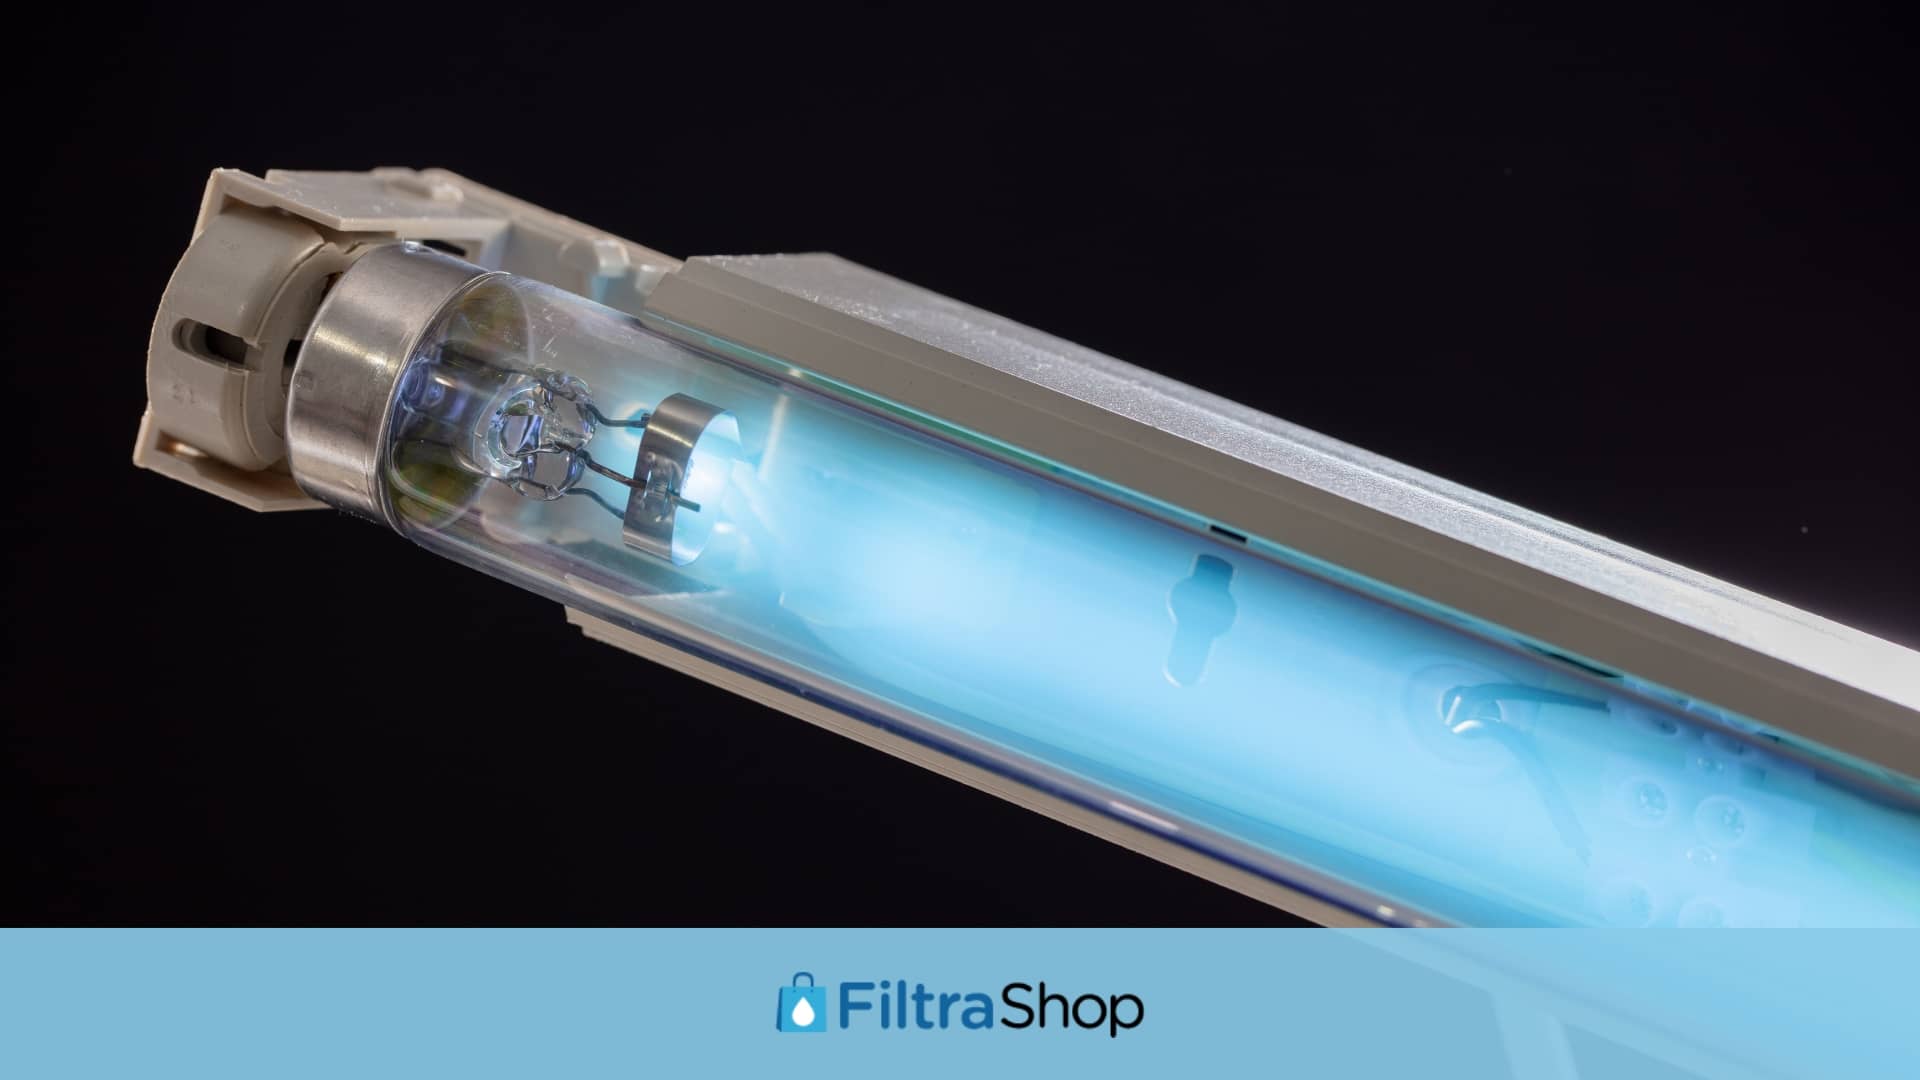 lampara-uv-tratamiento-del-agua- Purificadores-de-agua con-luz-UV